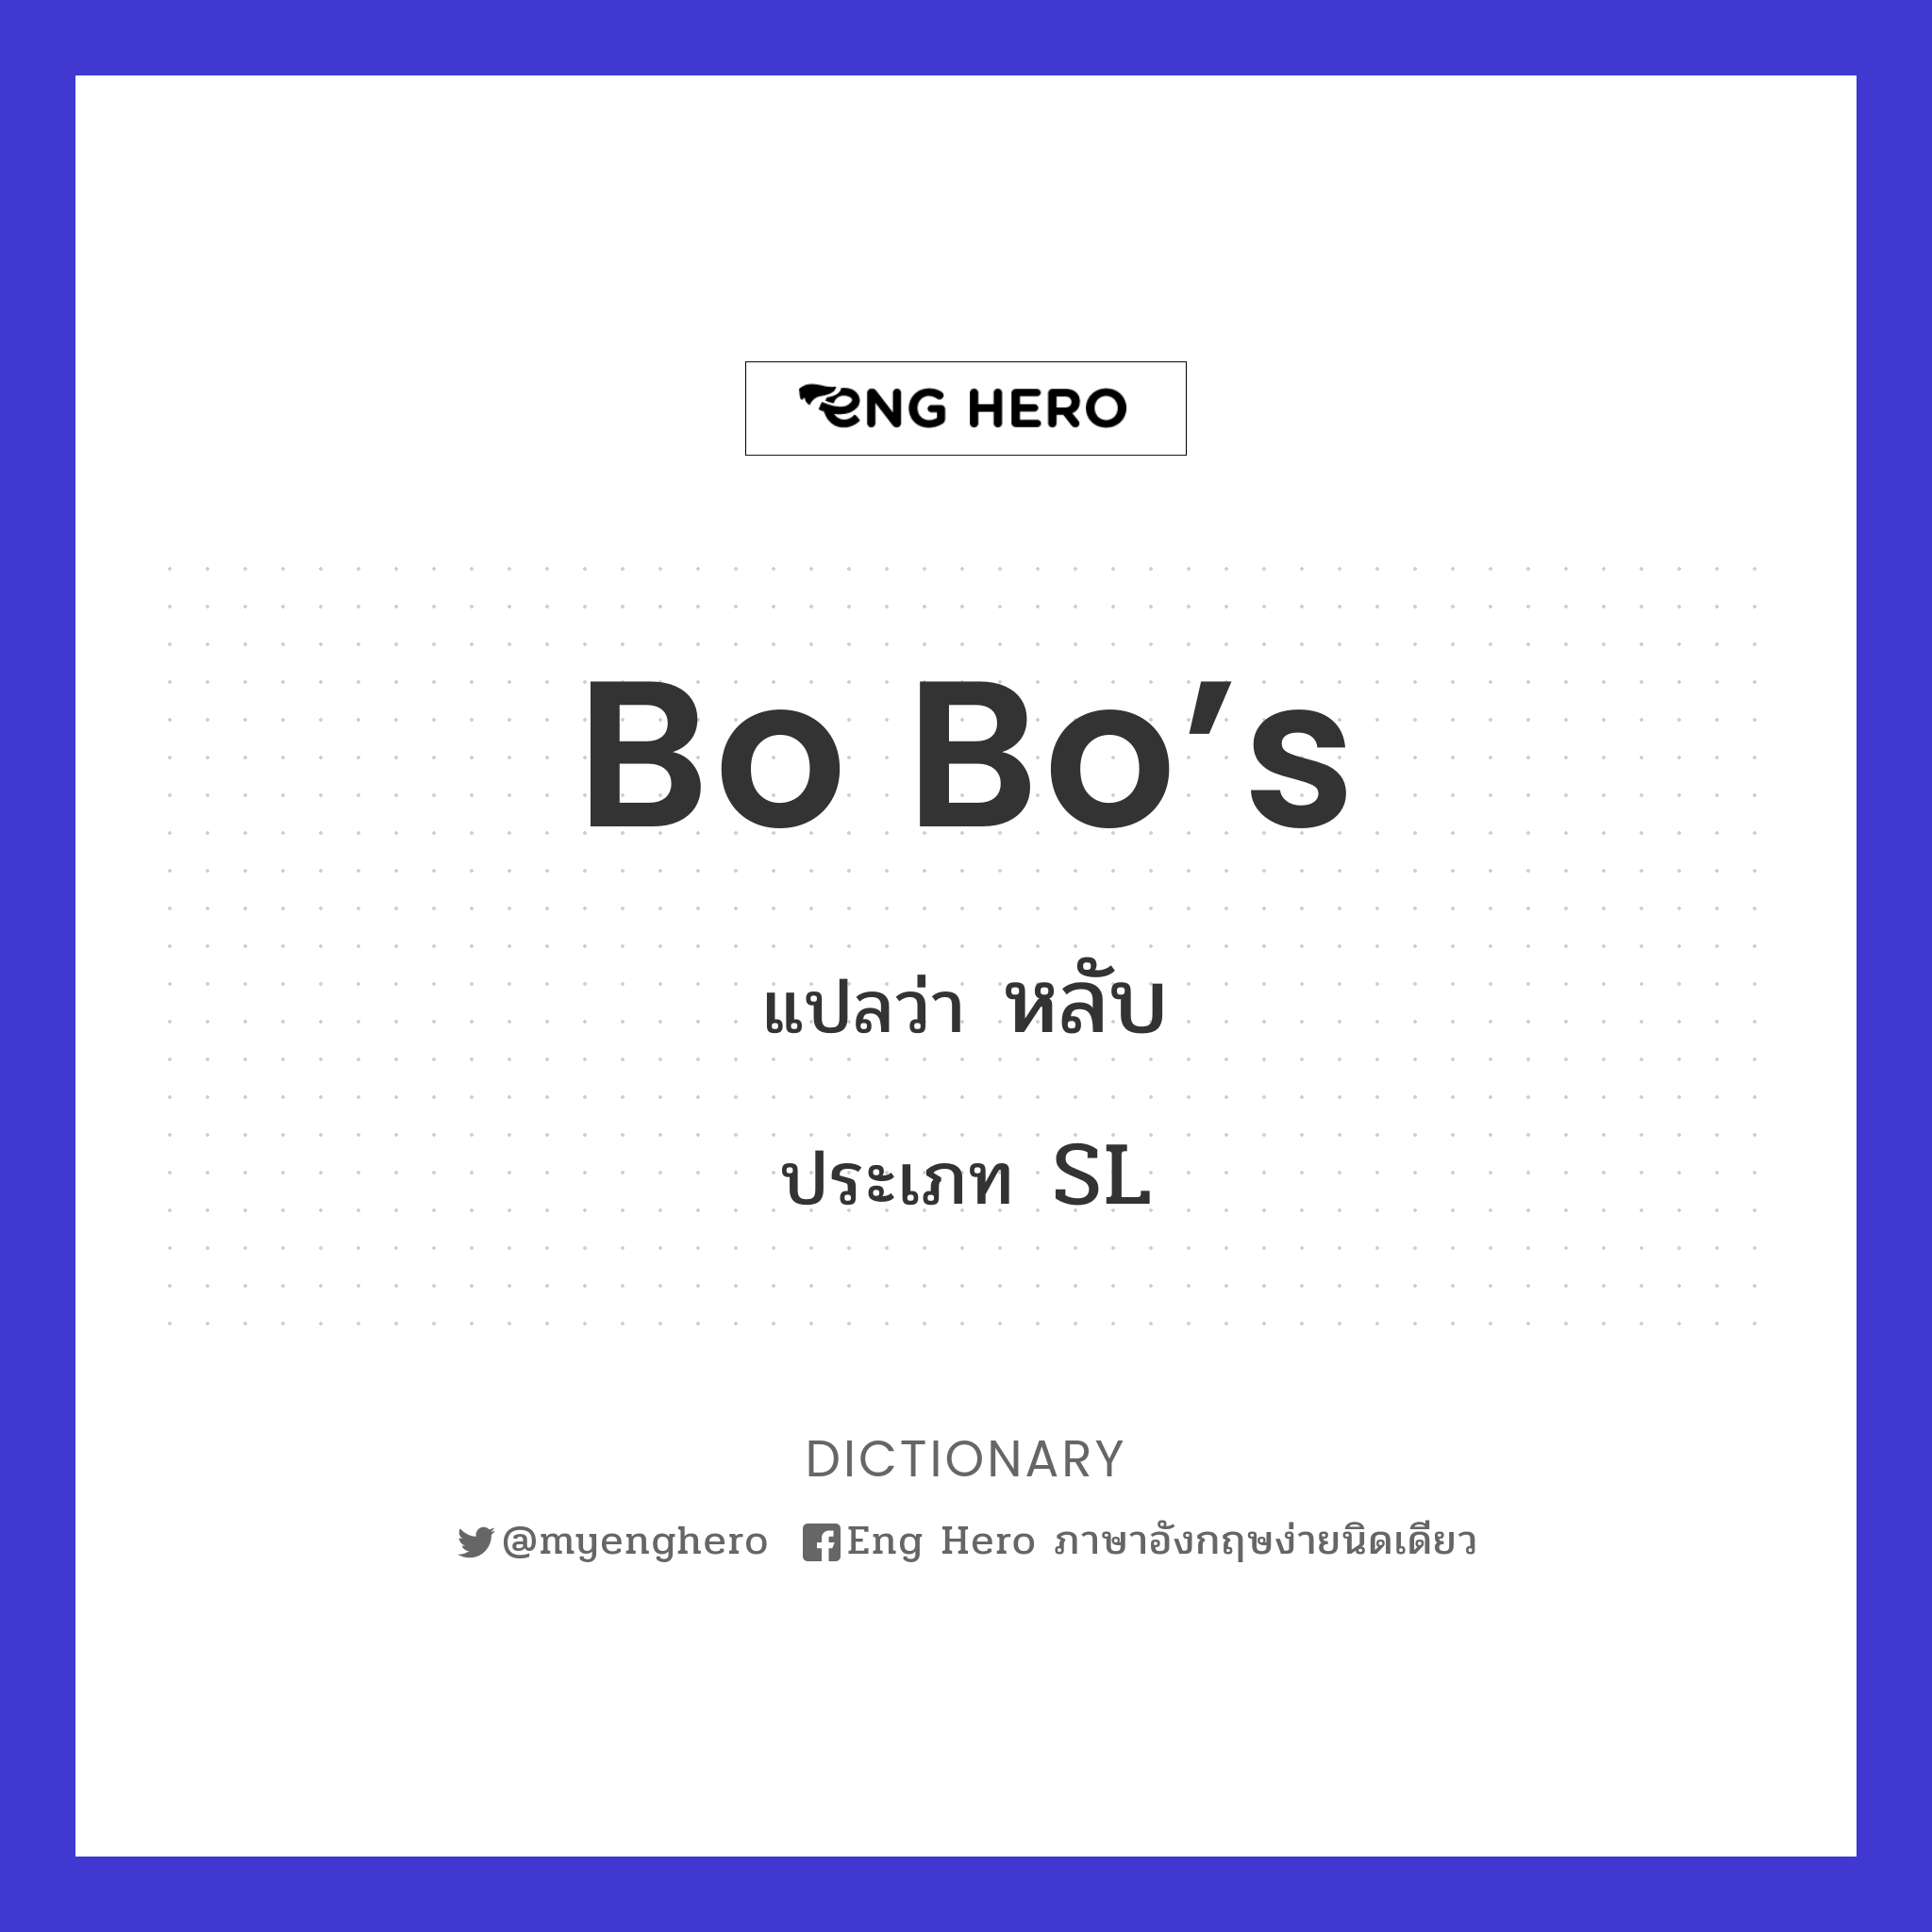 Bo Bo’s